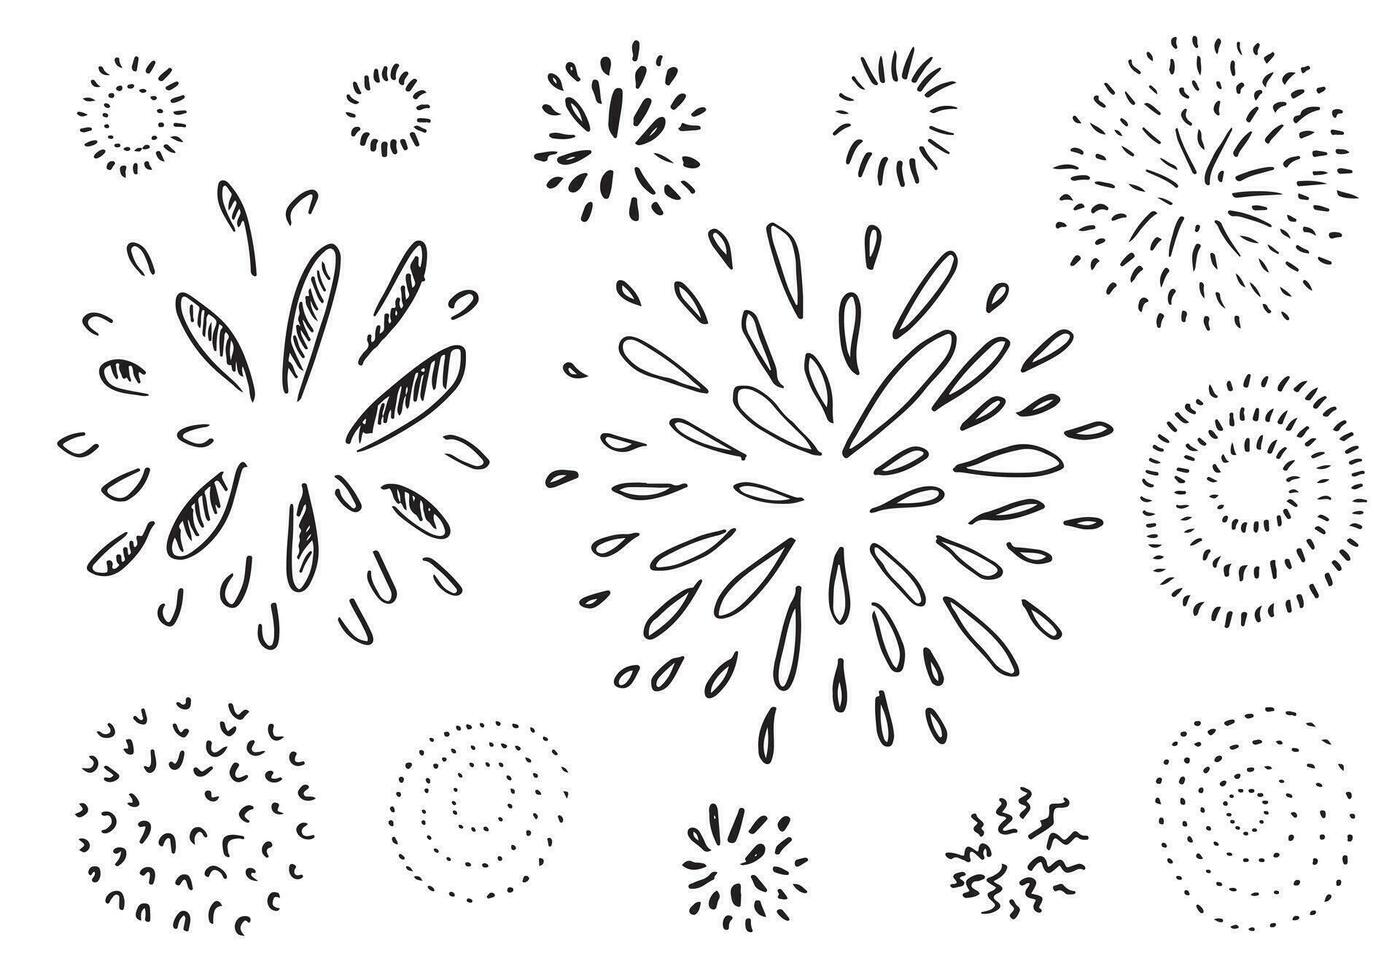 conjunto de doodle starburst isolado na mão de fundo branco desenhada de sunburst. elementos de design. ilustração vetorial. vetor